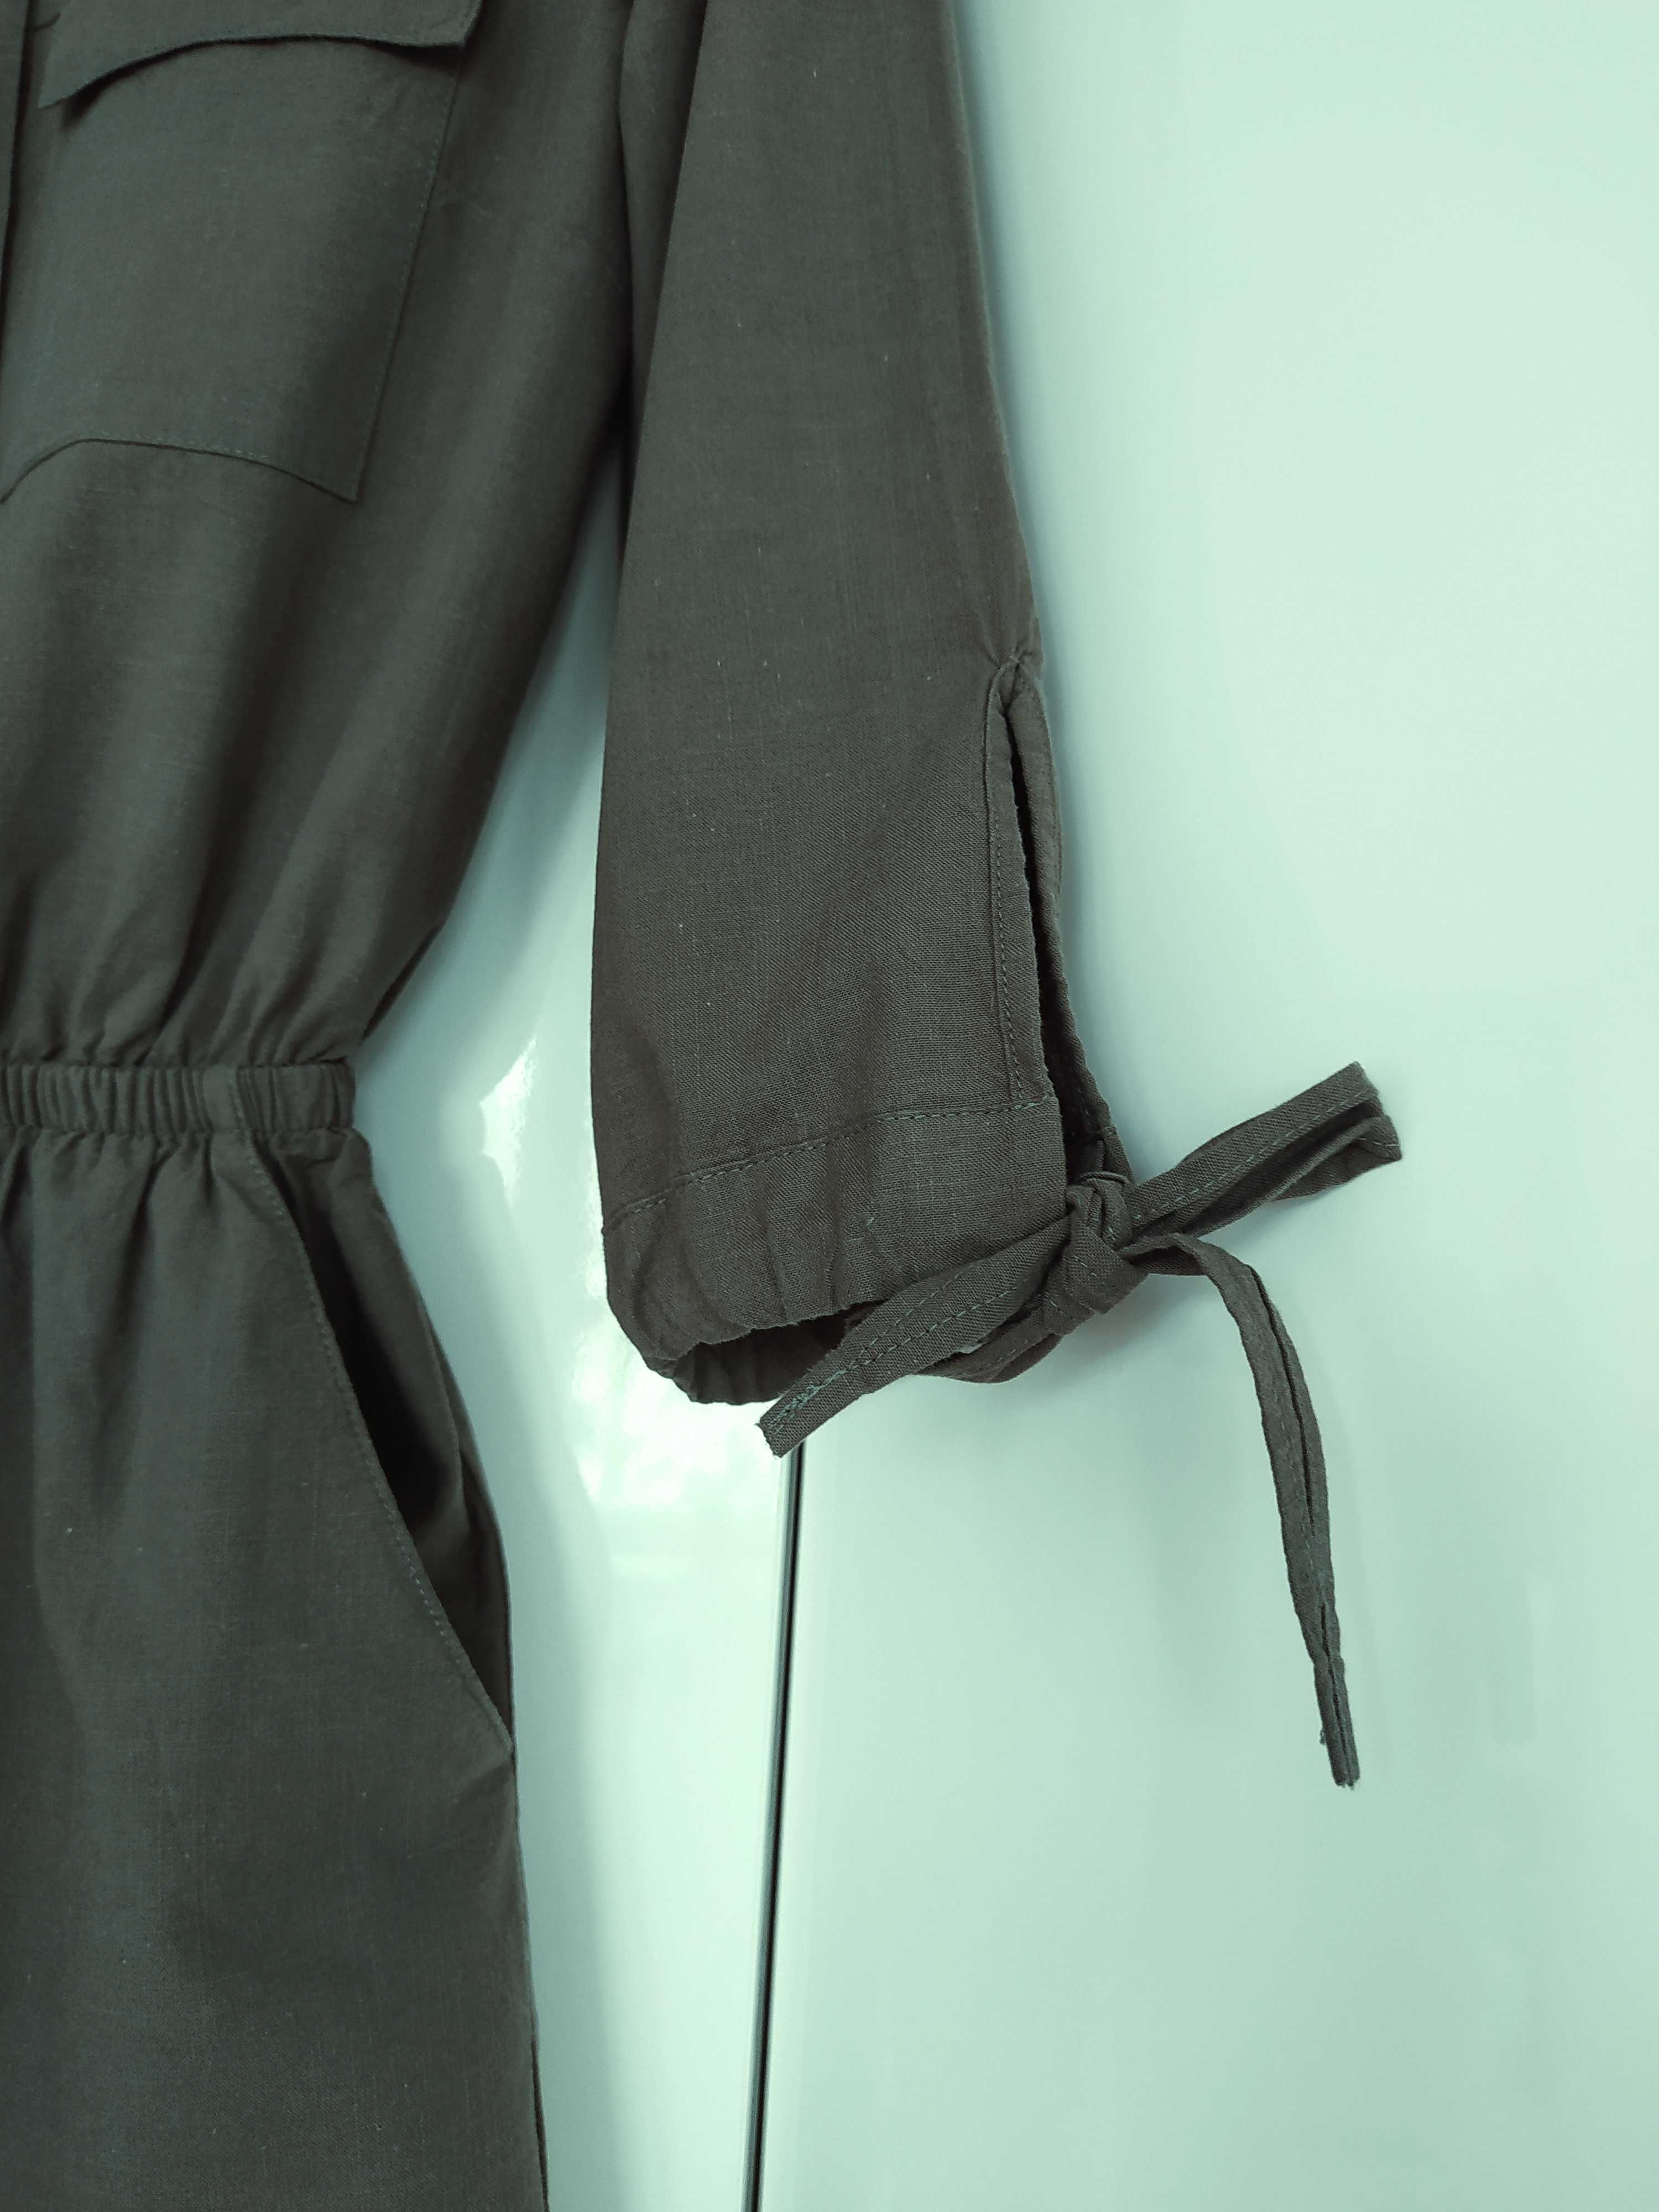 Nowy kombinezon H&M Divided khaki styl militarny rozmiar XS/S 34/36